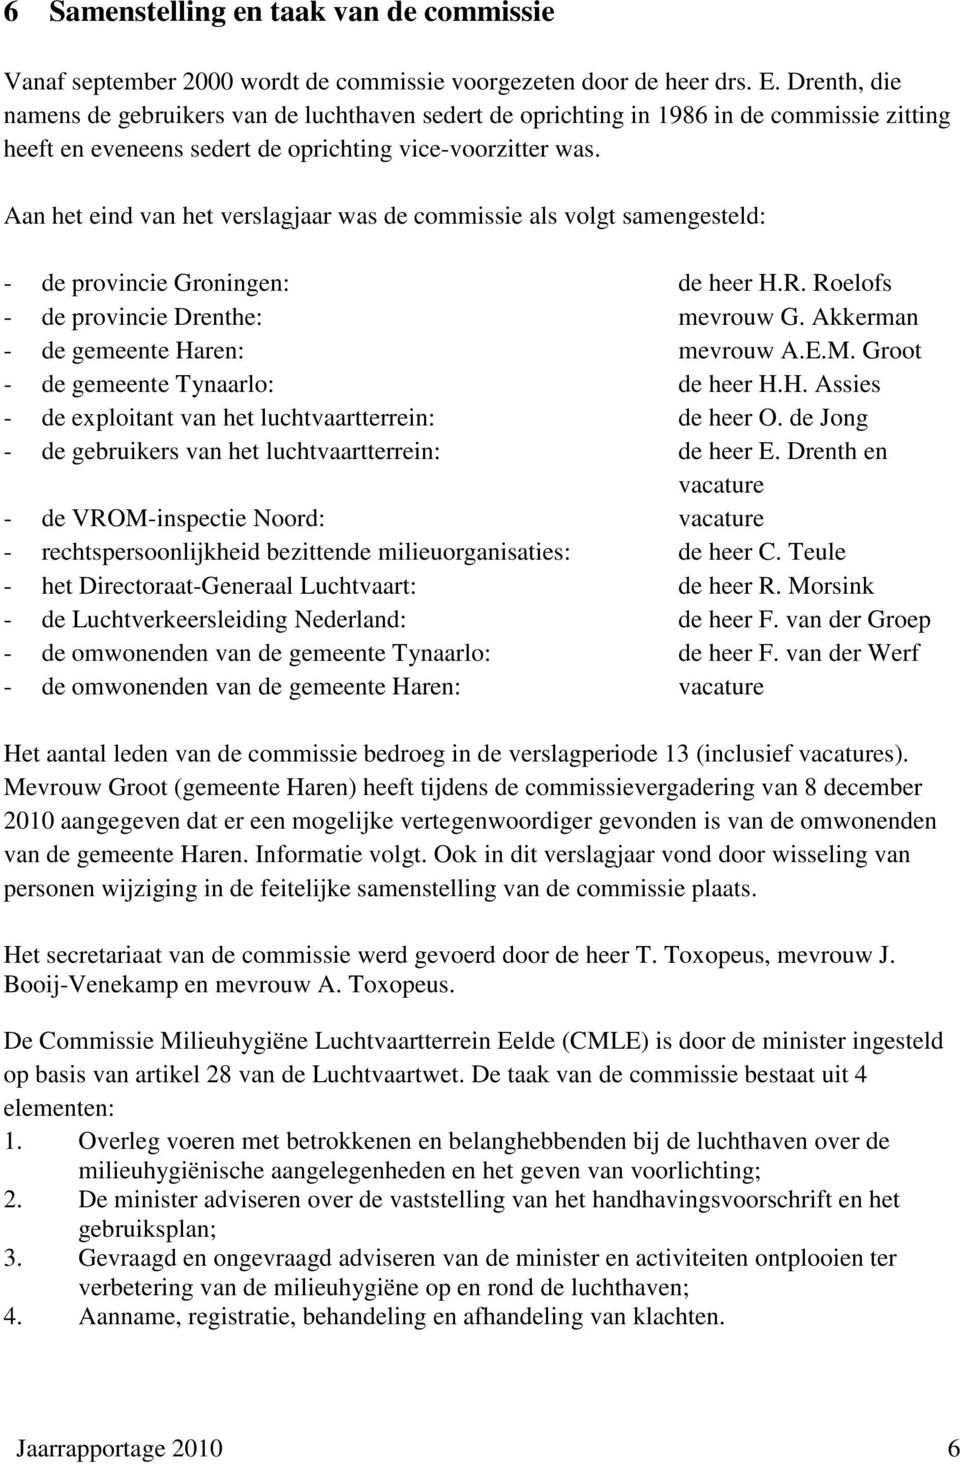 Aan het eind van het verslagjaar was de commissie als volgt samengesteld: - de provincie Groningen: de heer H.R. Roelofs - de provincie Drenthe: mevrouw G. Akkerman - de gemeente Haren: mevrouw A.E.M.